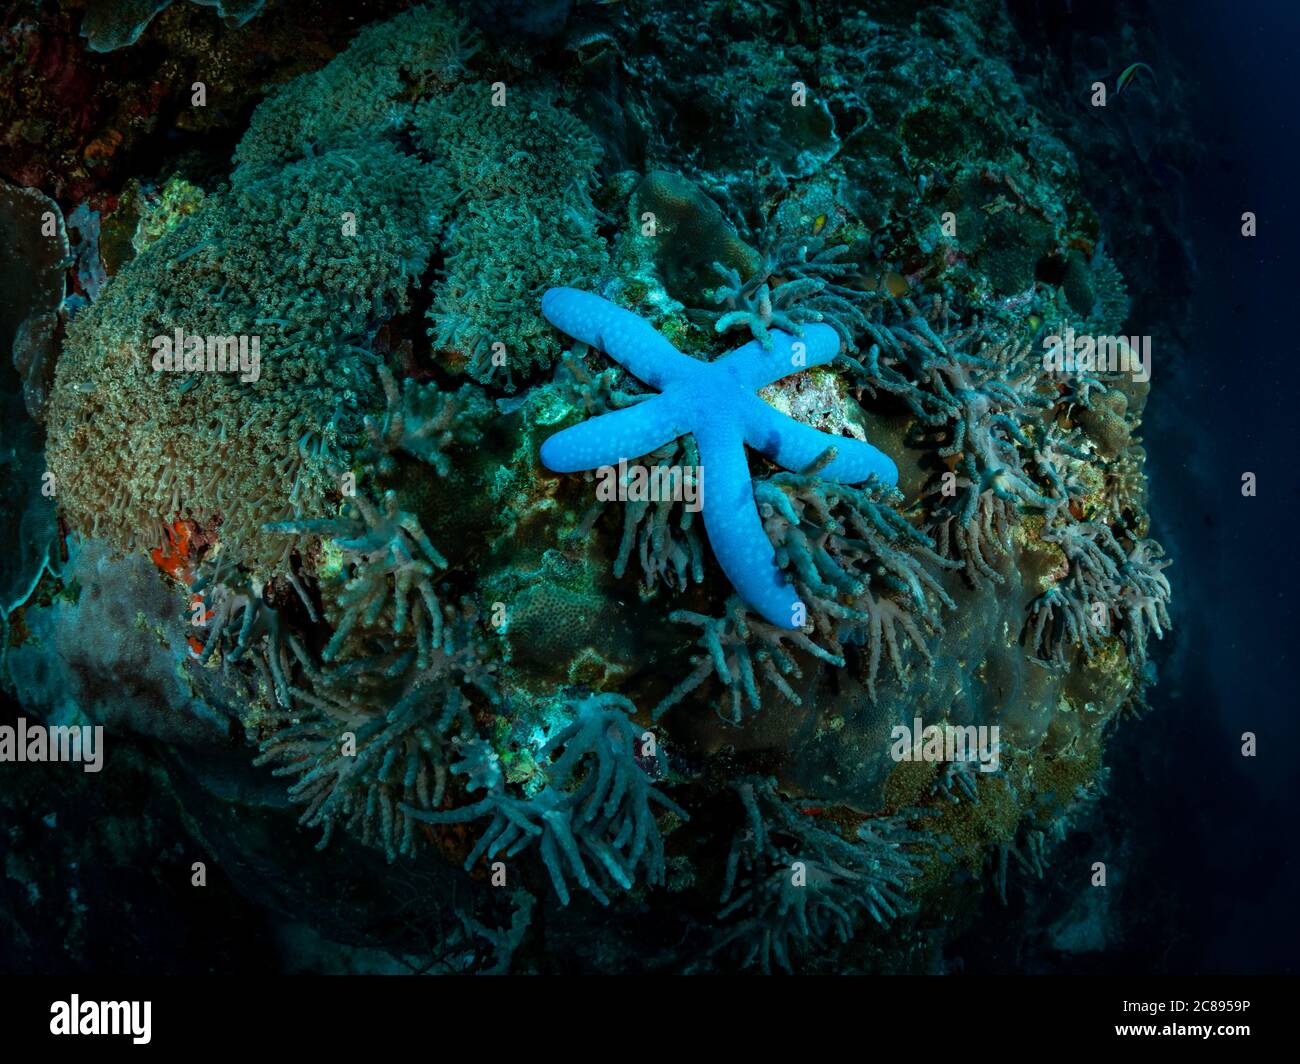 Bella stella marina sulla barriera corallina. Foto subacquea. Filippine. Foto Stock